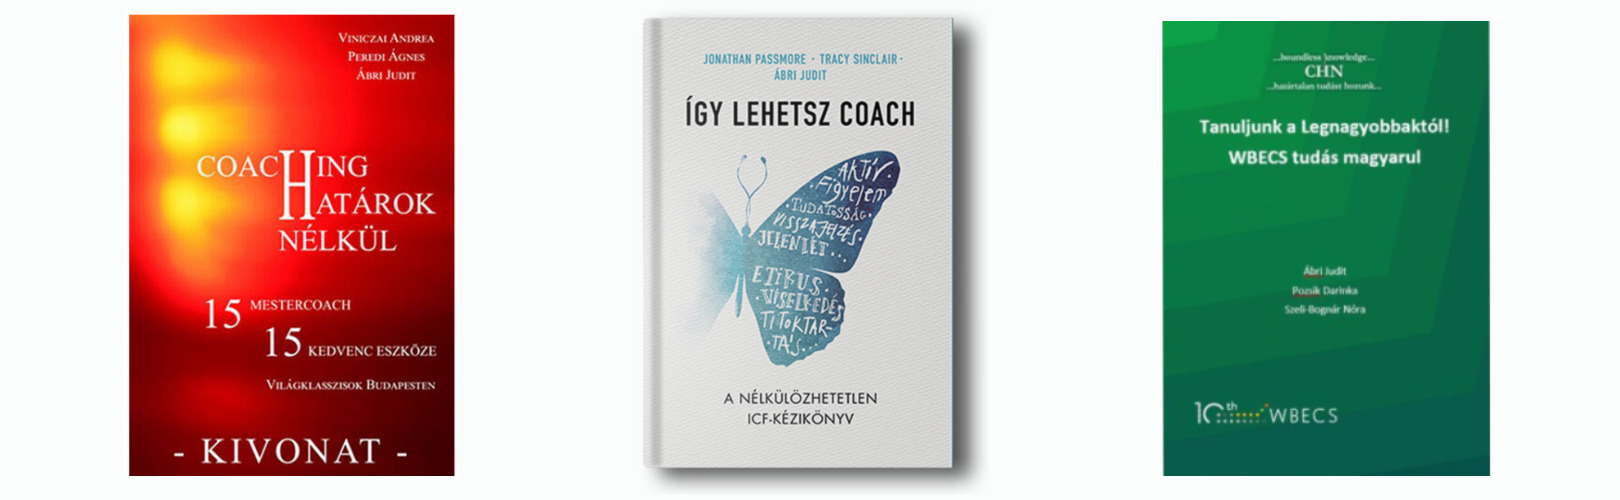 Ábri Judit - Coaching határok nélkül - könyvei